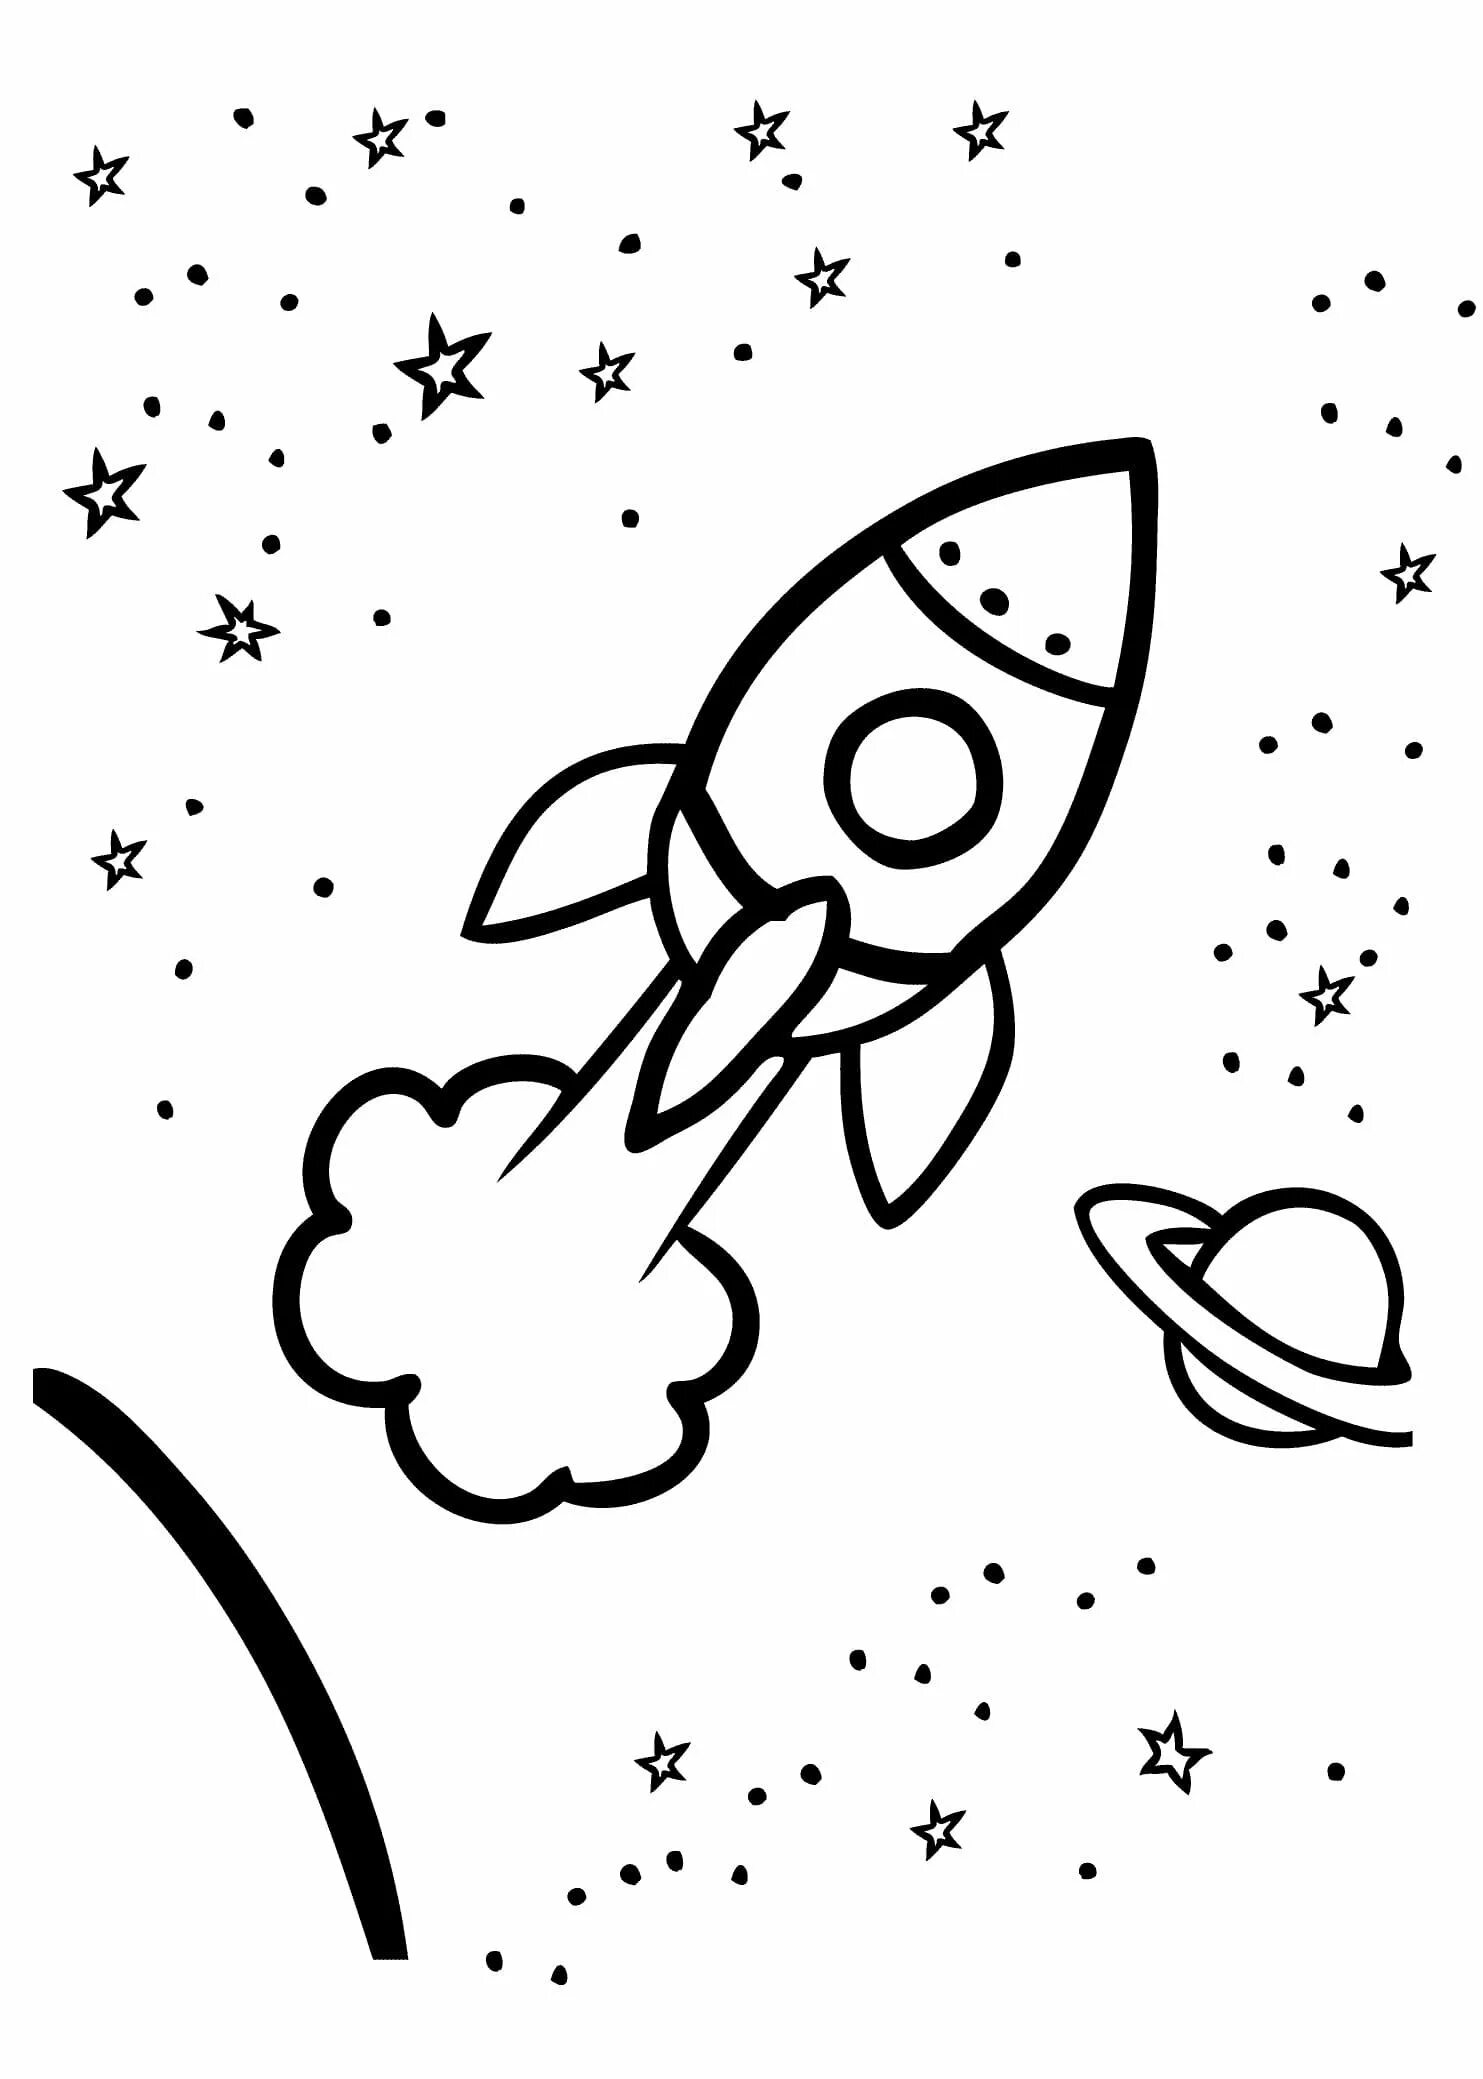 Раскраска ракета для детей 4 5 лет. Раскраска. В космосе. Ракета раскраска. Космос раскраска для детей. Раскраска ракета в космосе.